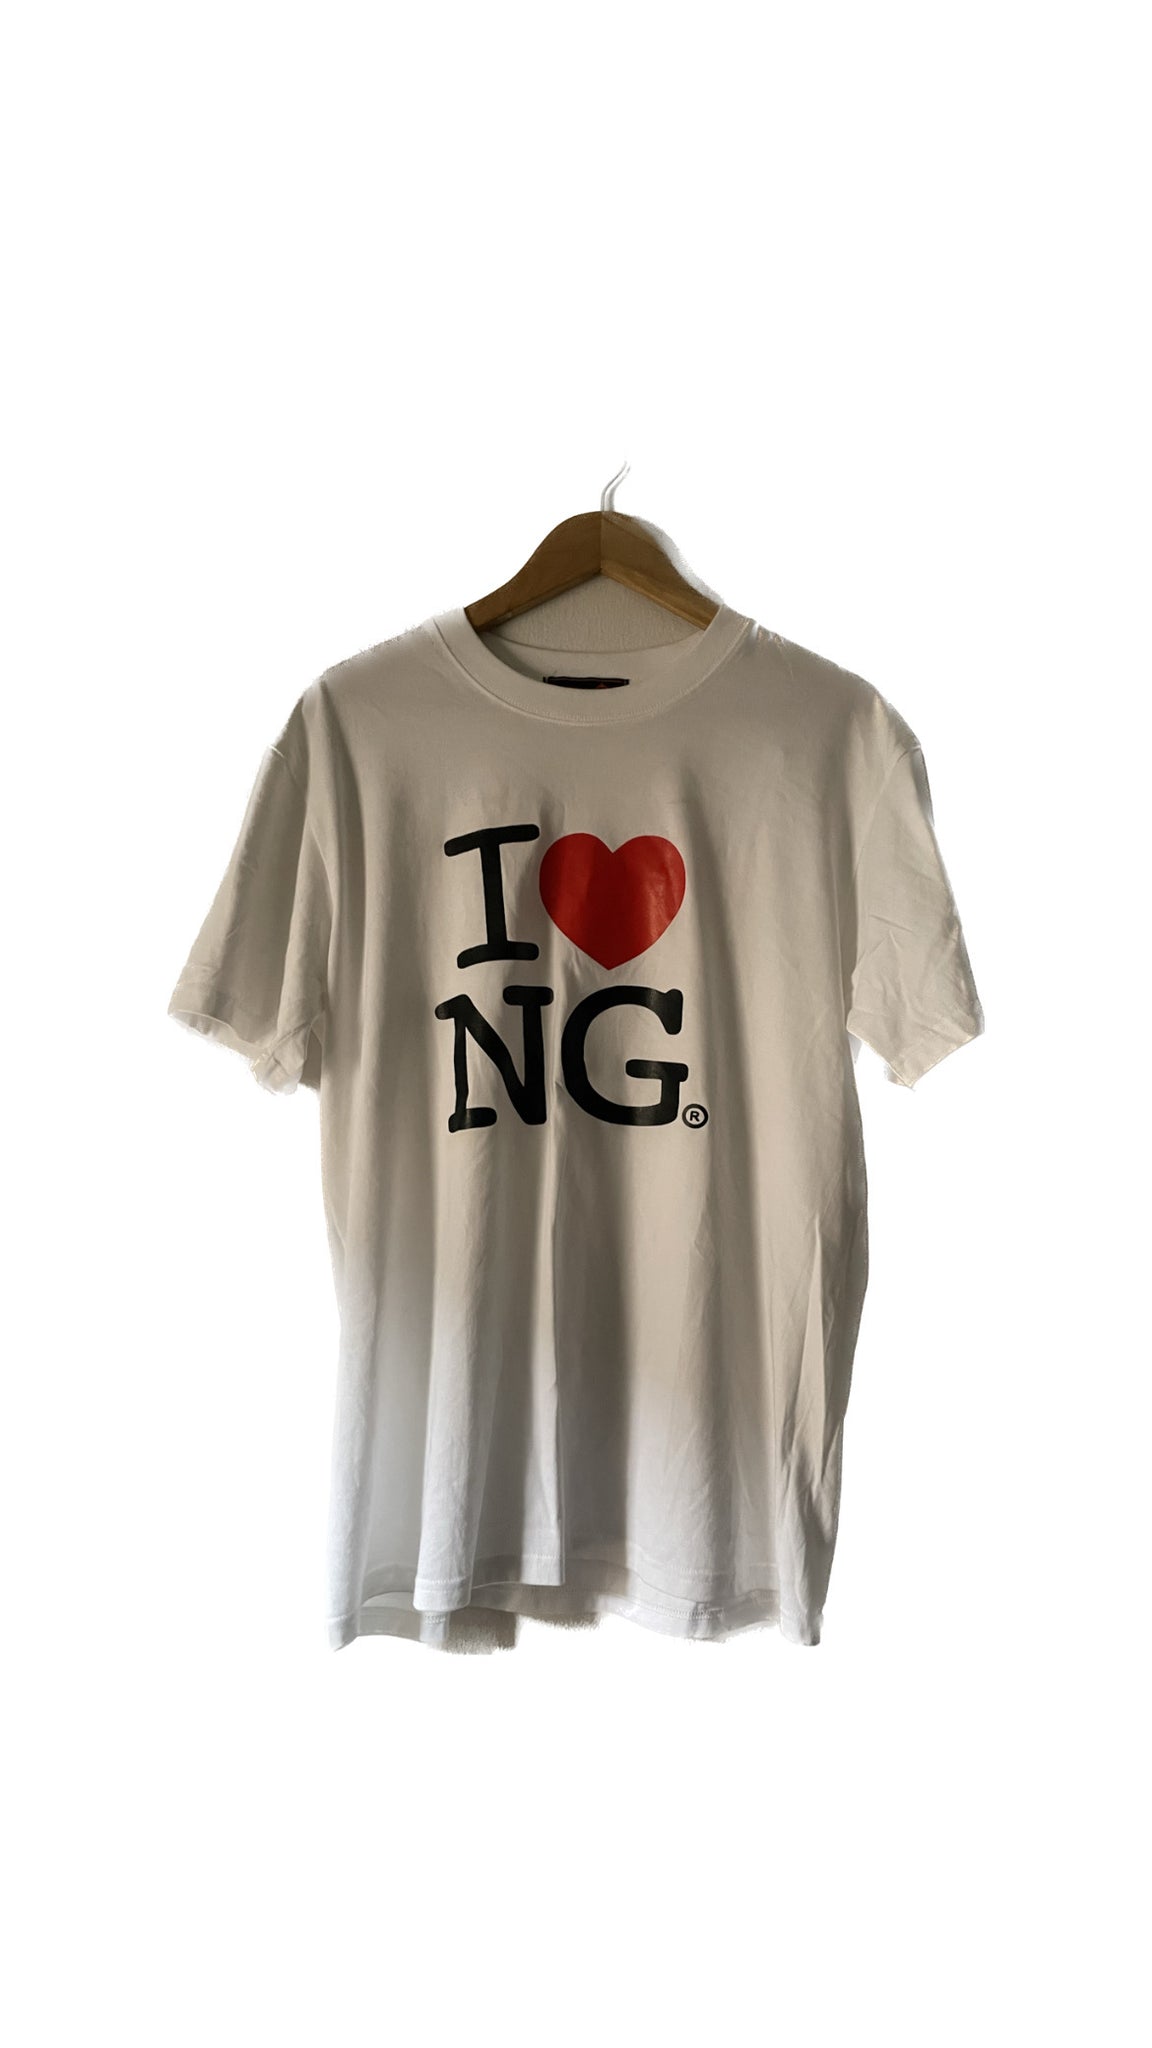 I LOVE NG